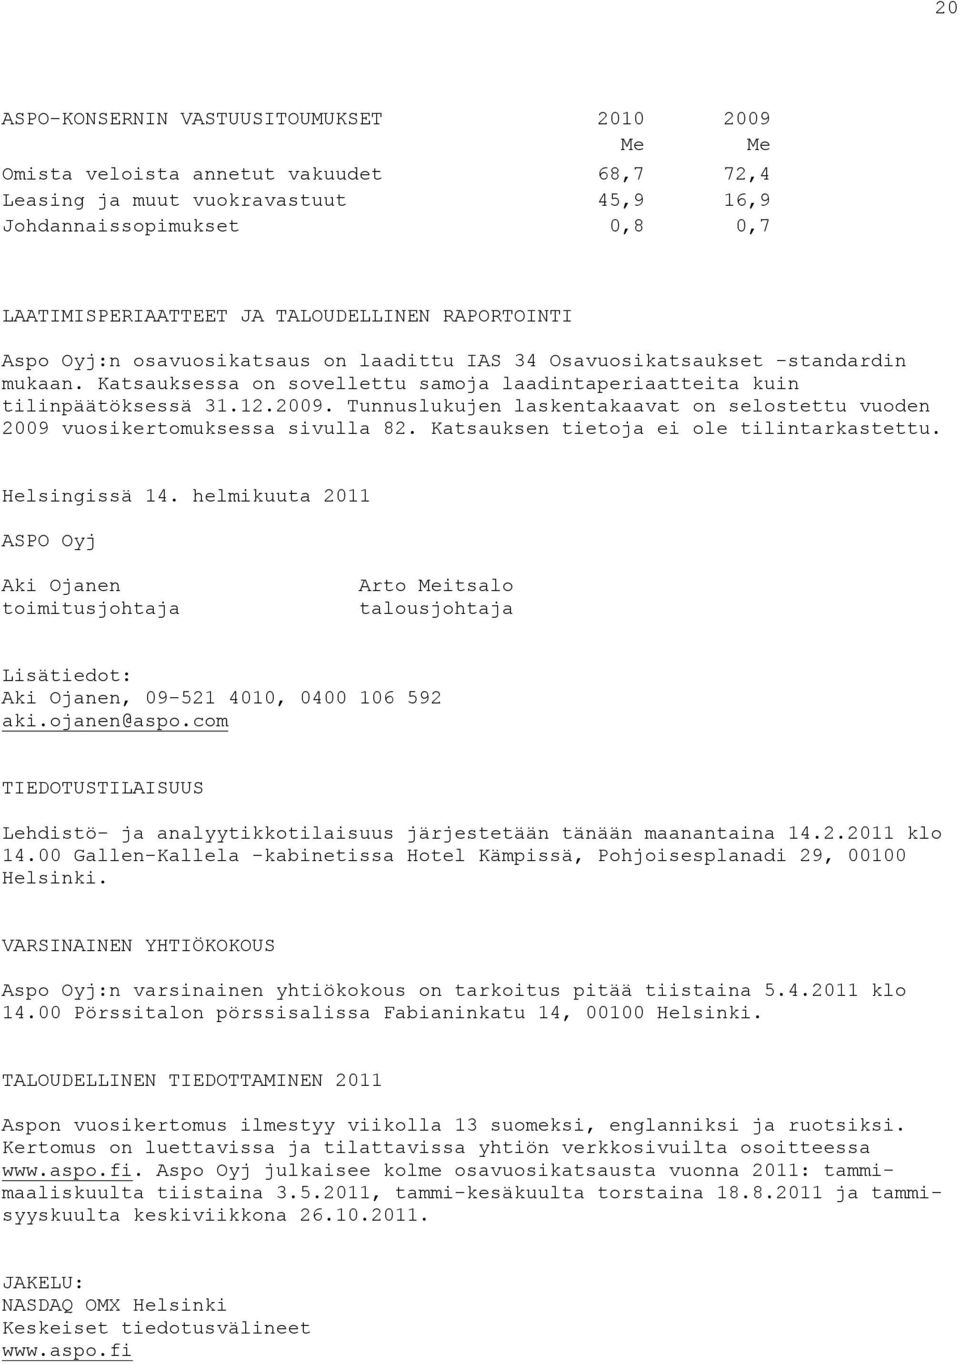 Tunnuslukujen laskentakaavat on selostettu vuoden 2009 vuosikertomuksessa sivulla 82. Katsauksen tietoja ei ole tilintarkastettu. Helsingissä 14.